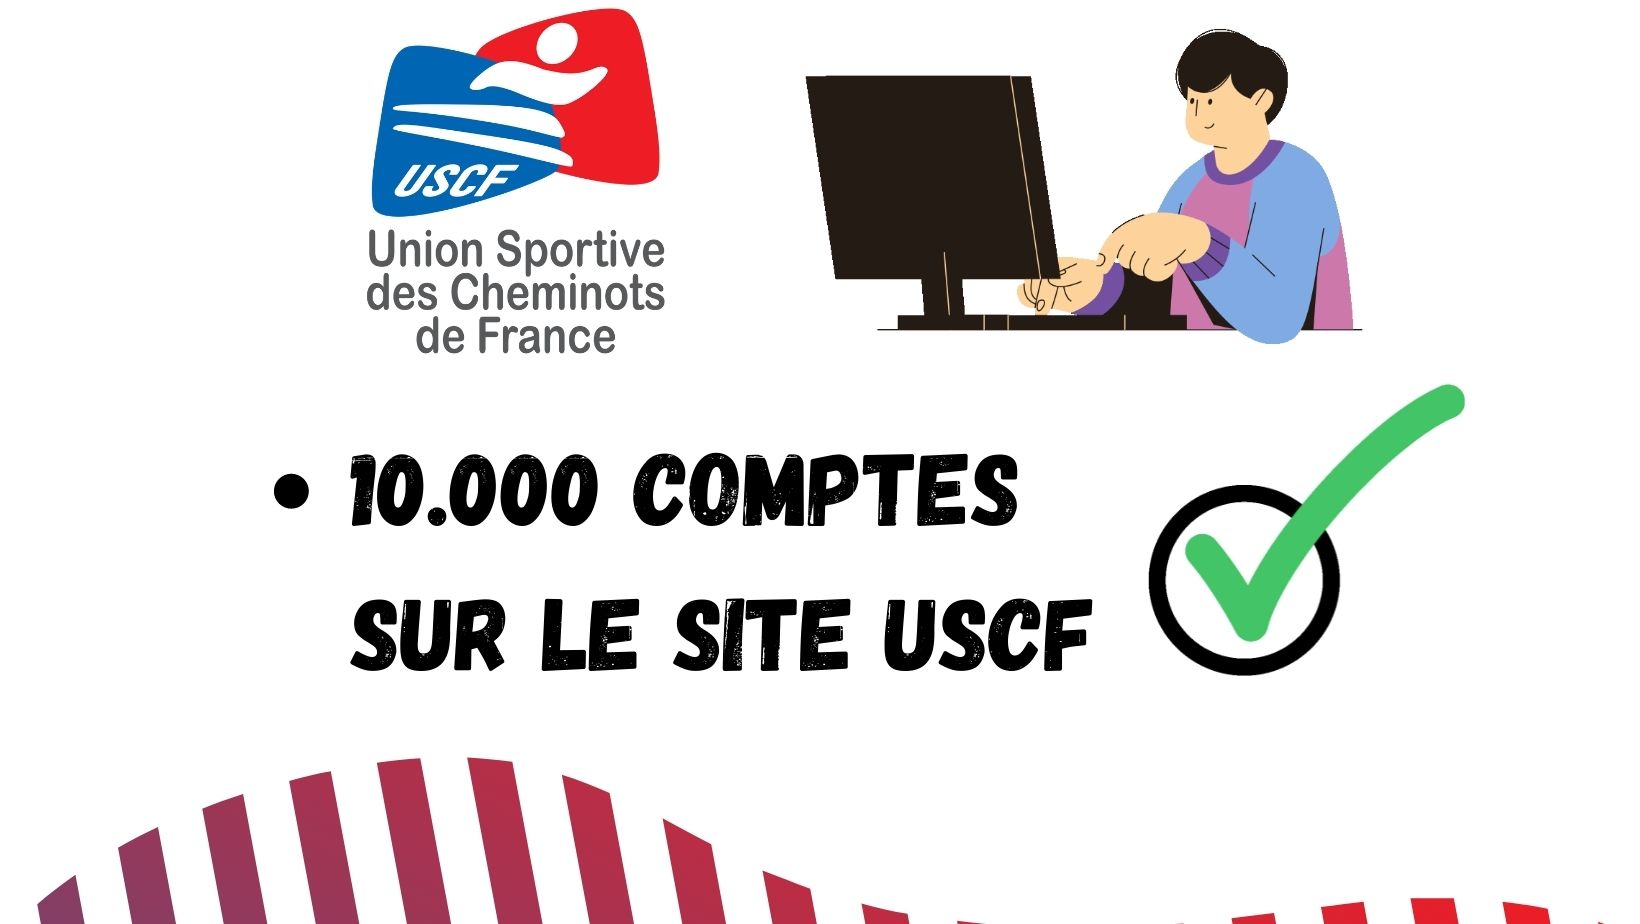 Le cap des 10.000 comptes franchi sur le site USCF !